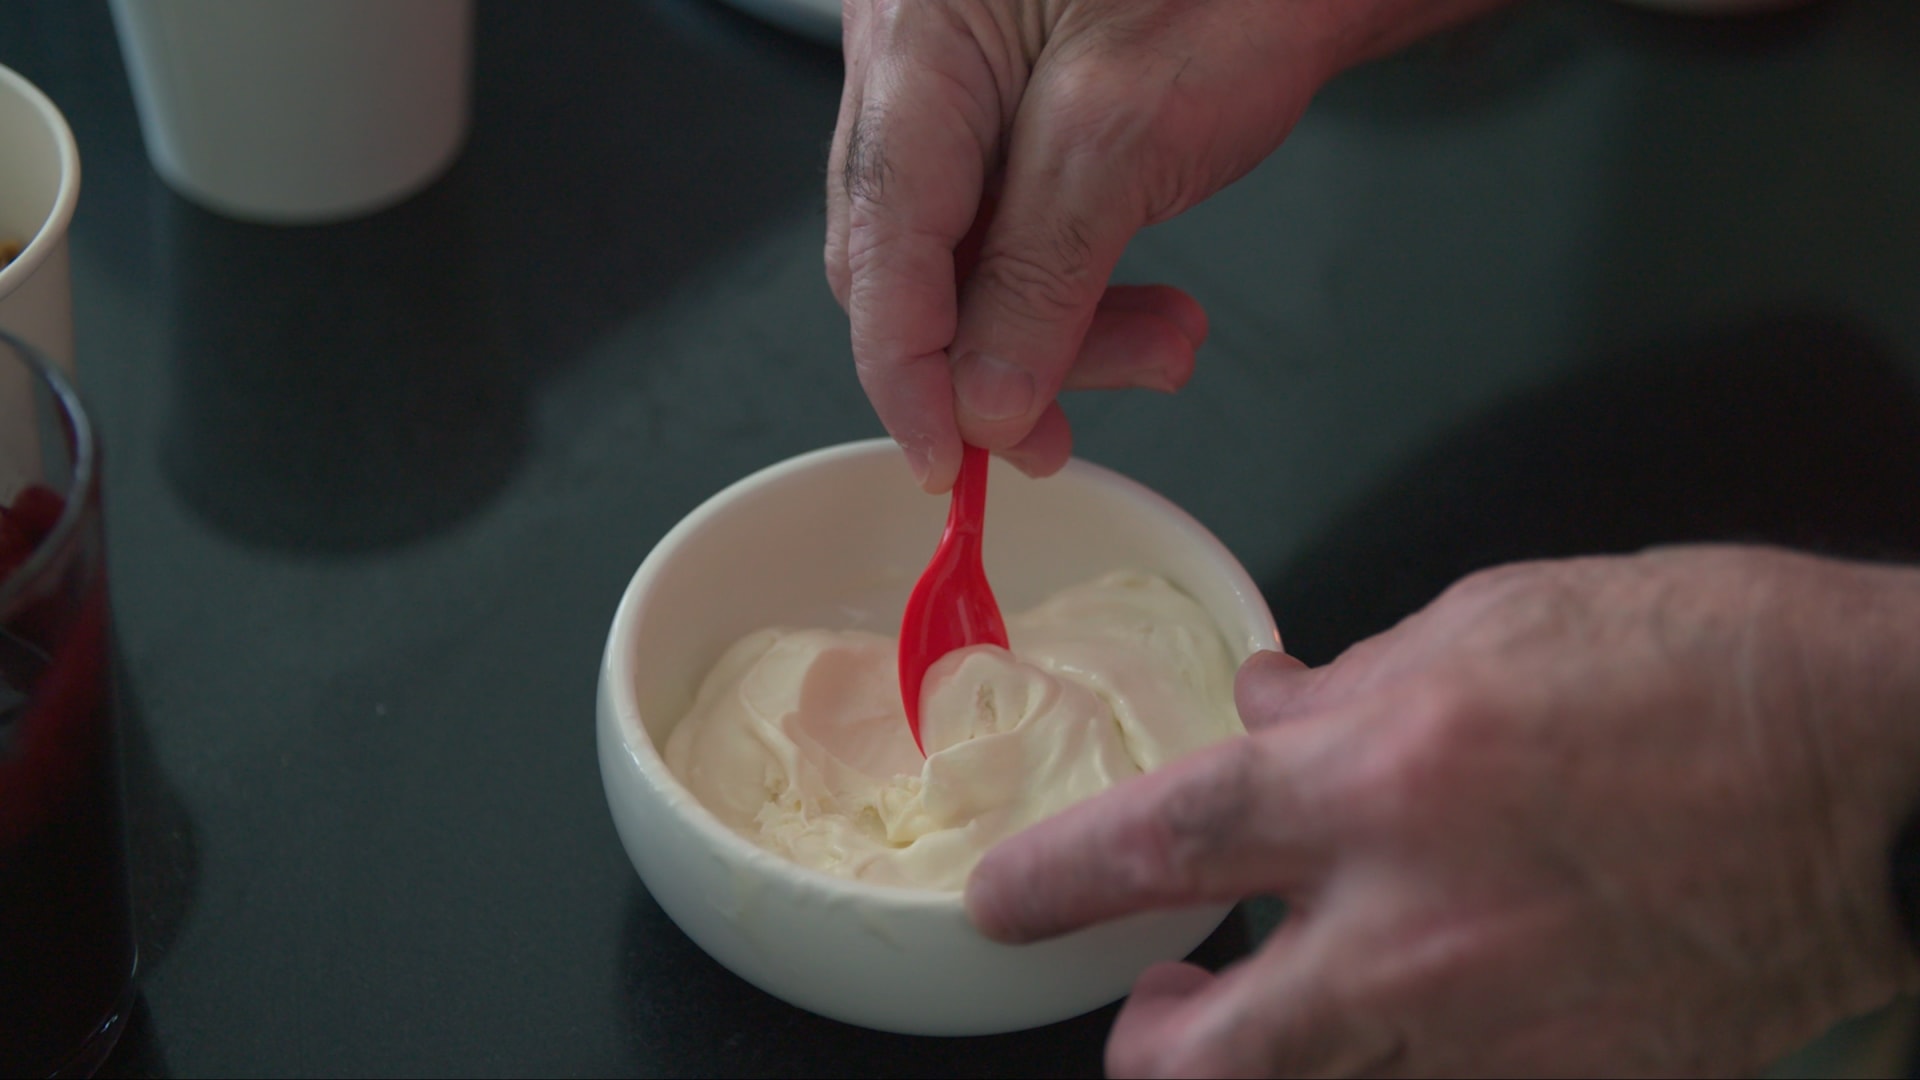 “طبيب الجليد” يكشف عن أغرب المثلجات المصنوعة في كهفه الخاص بدبي